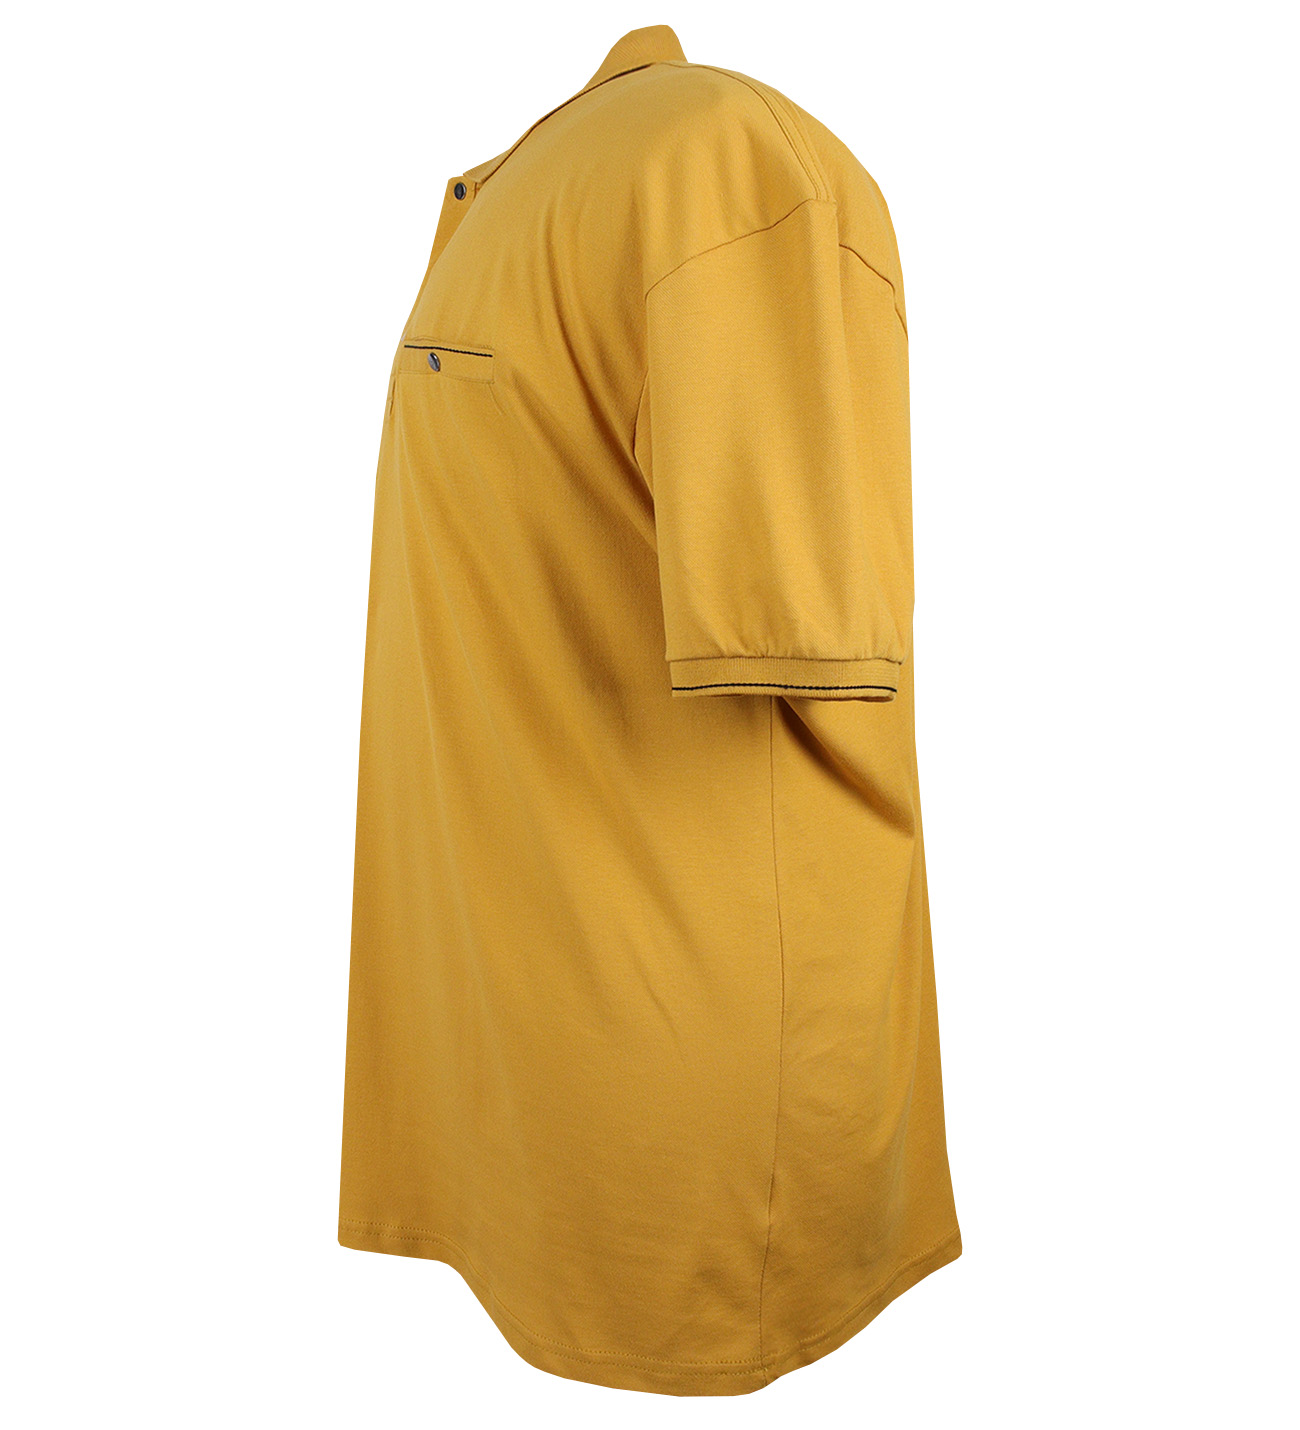 Büyük Beden Polo Yaka Tişört Cepli Pike Sarı